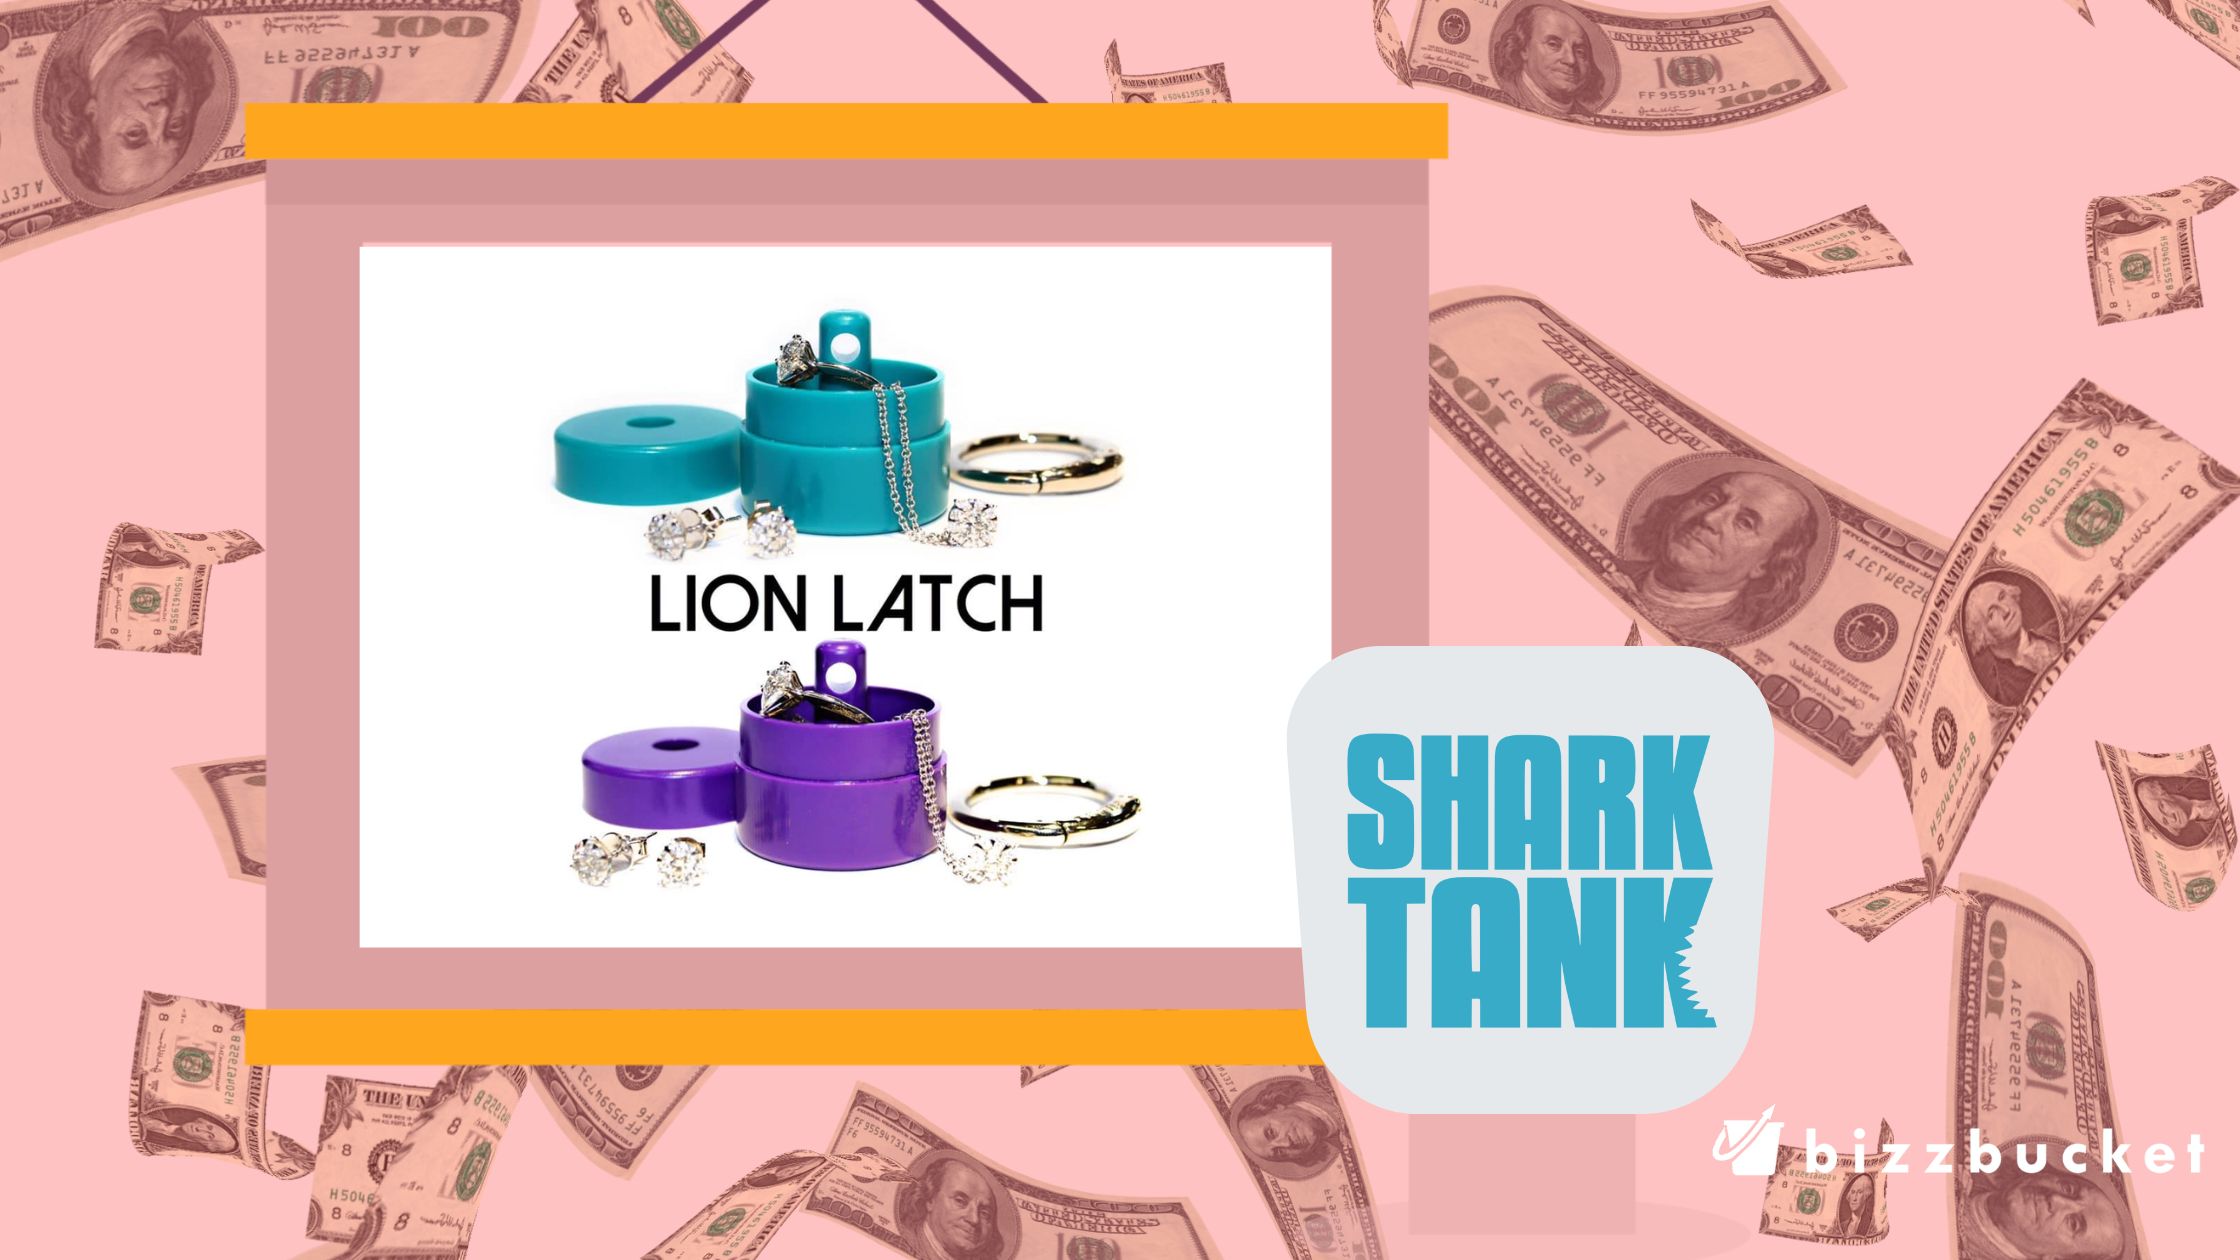 Lion Latch shark tank update